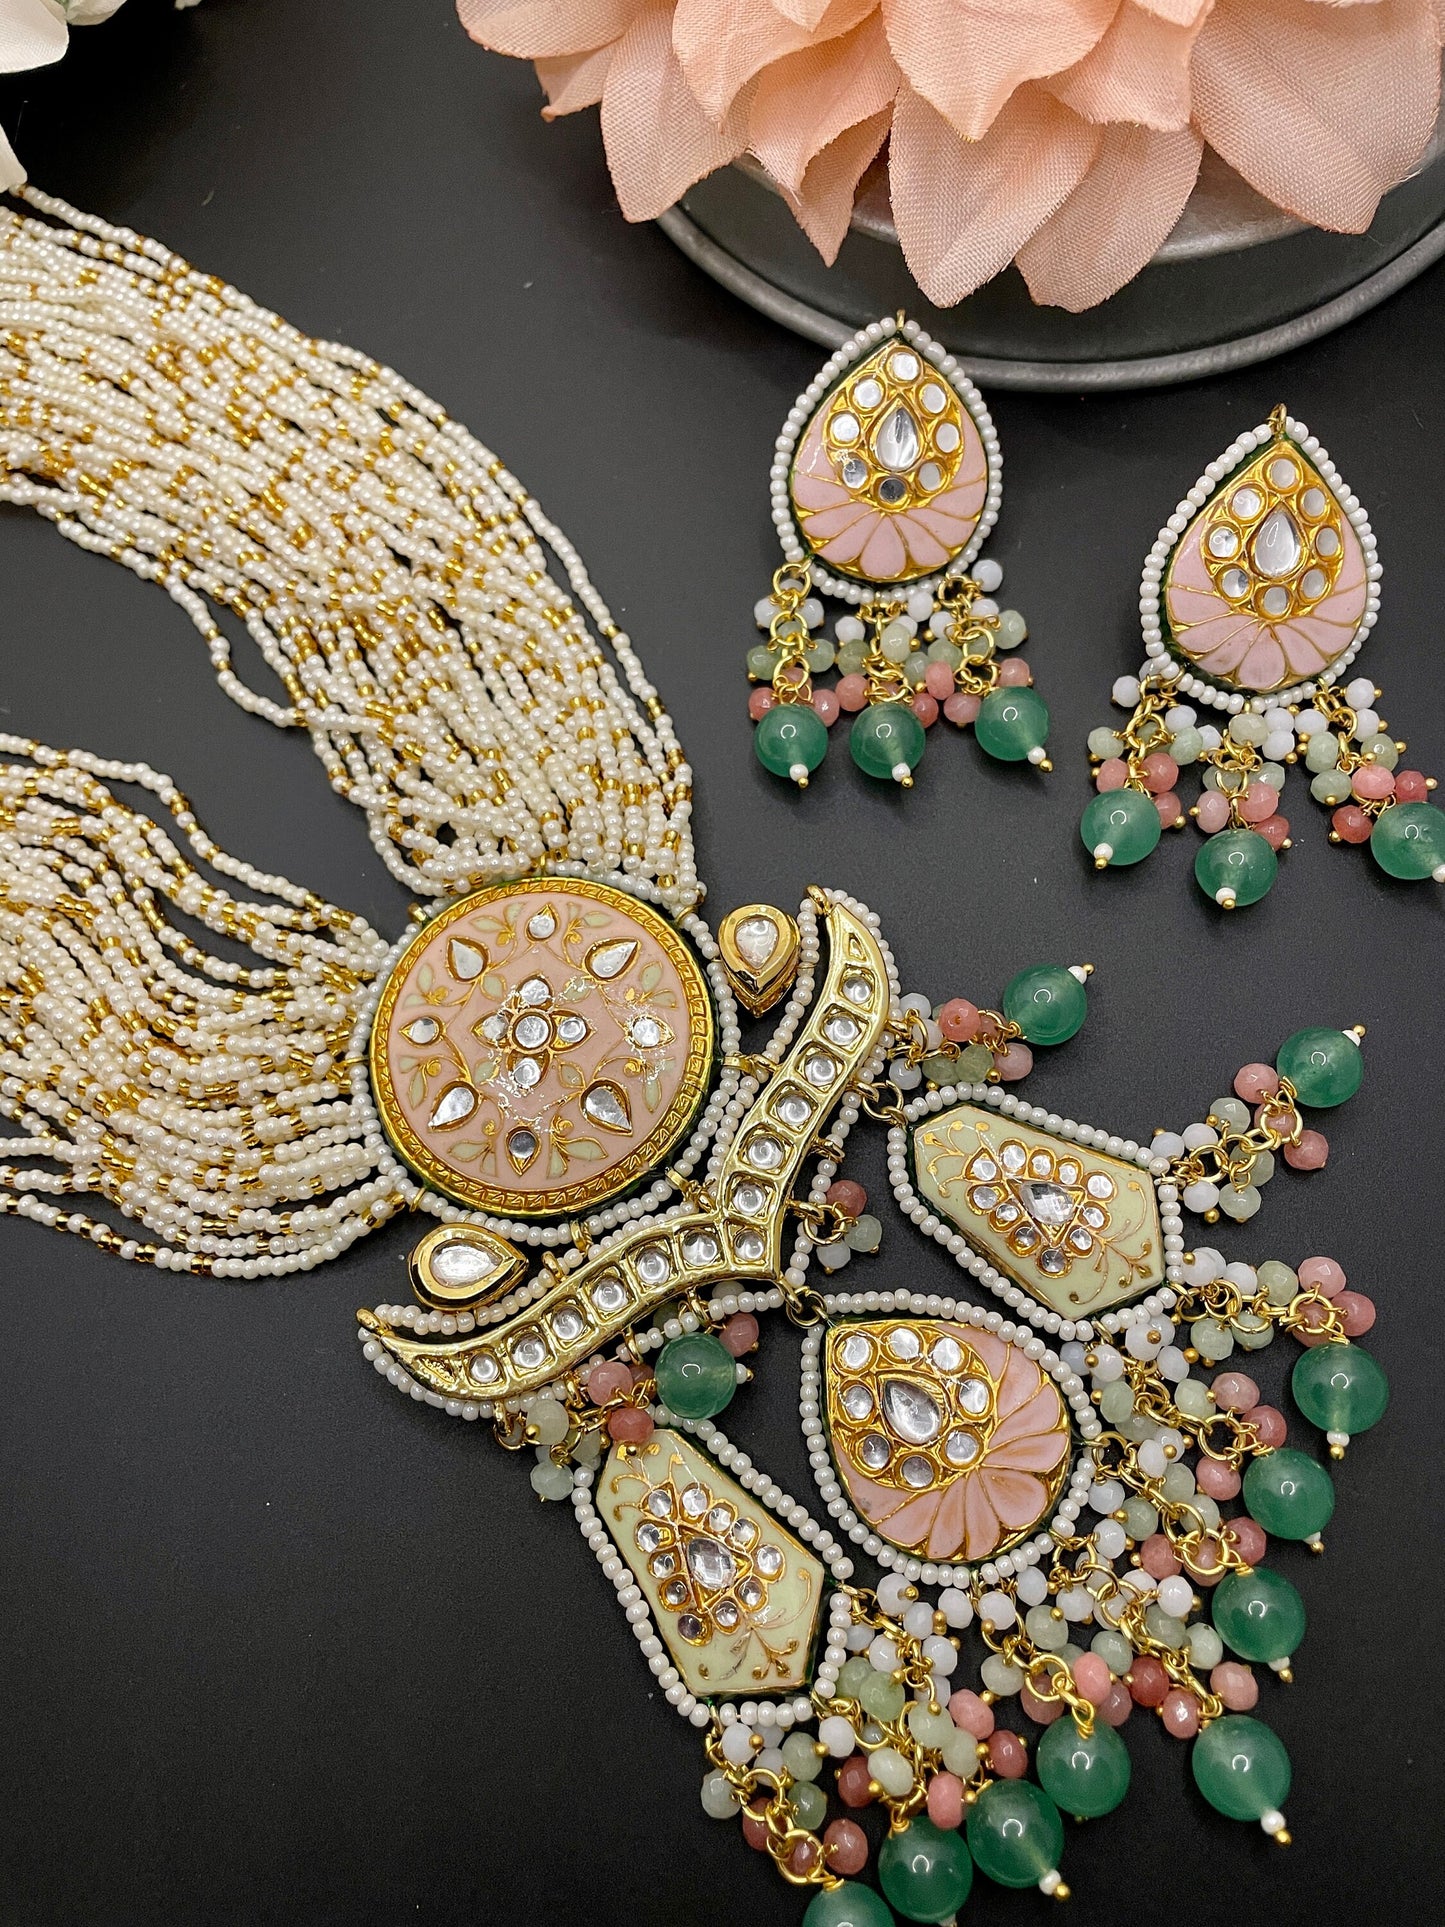 Joyería Rajasthani/Collar Meenakari/Joyería india de Bollywood/Collar nupcial indio/Joyería Mehendi/Collar indio único brillante jhumka